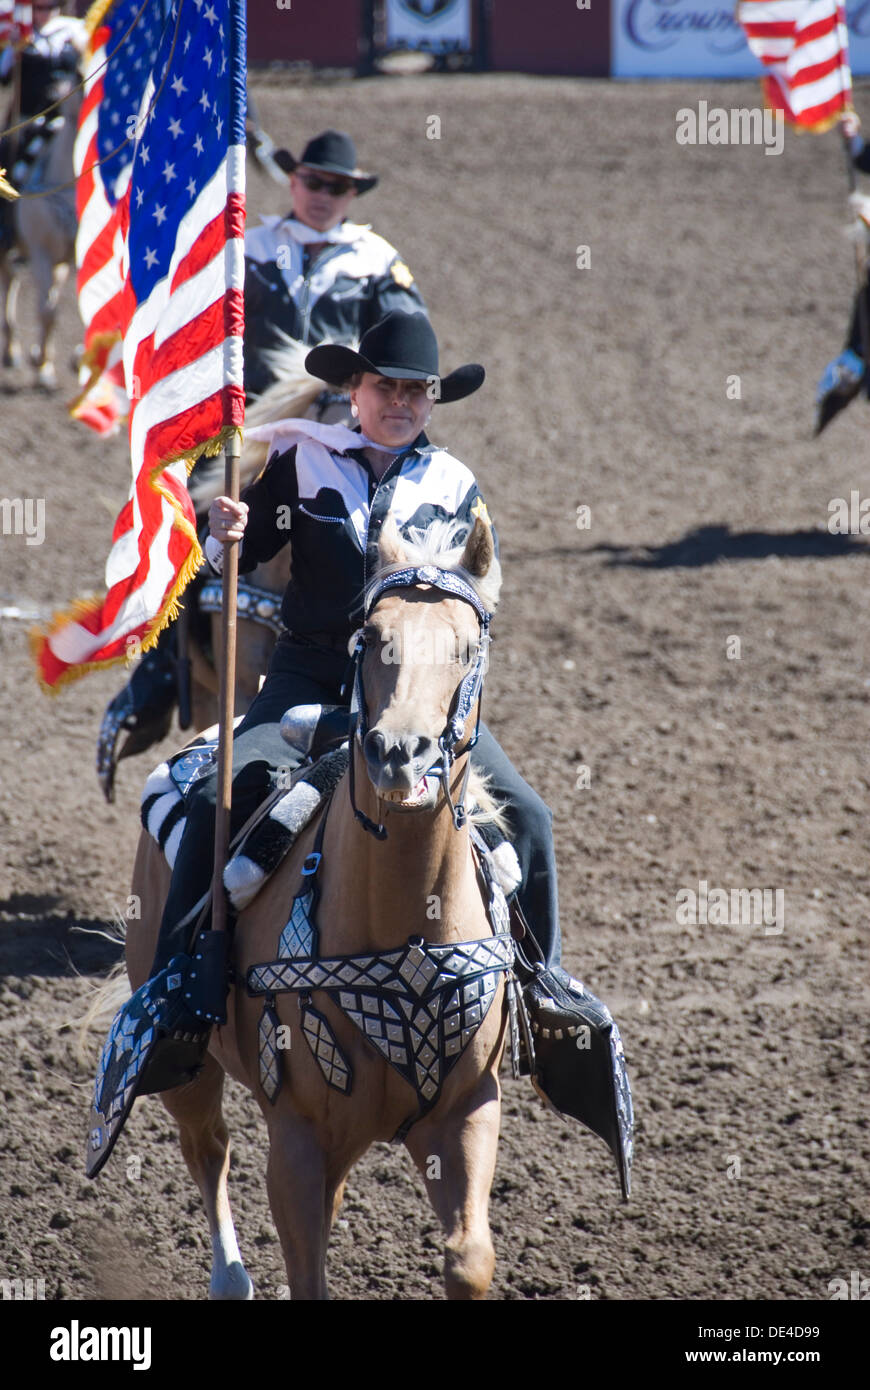 Cowgirl Trägerin auf dem Pferderücken mit amerikanischen Stars und Stripes Flaggen, Ellensburg Rodeo Eröffnungsfeier, Washington, WA, USA Stockfoto